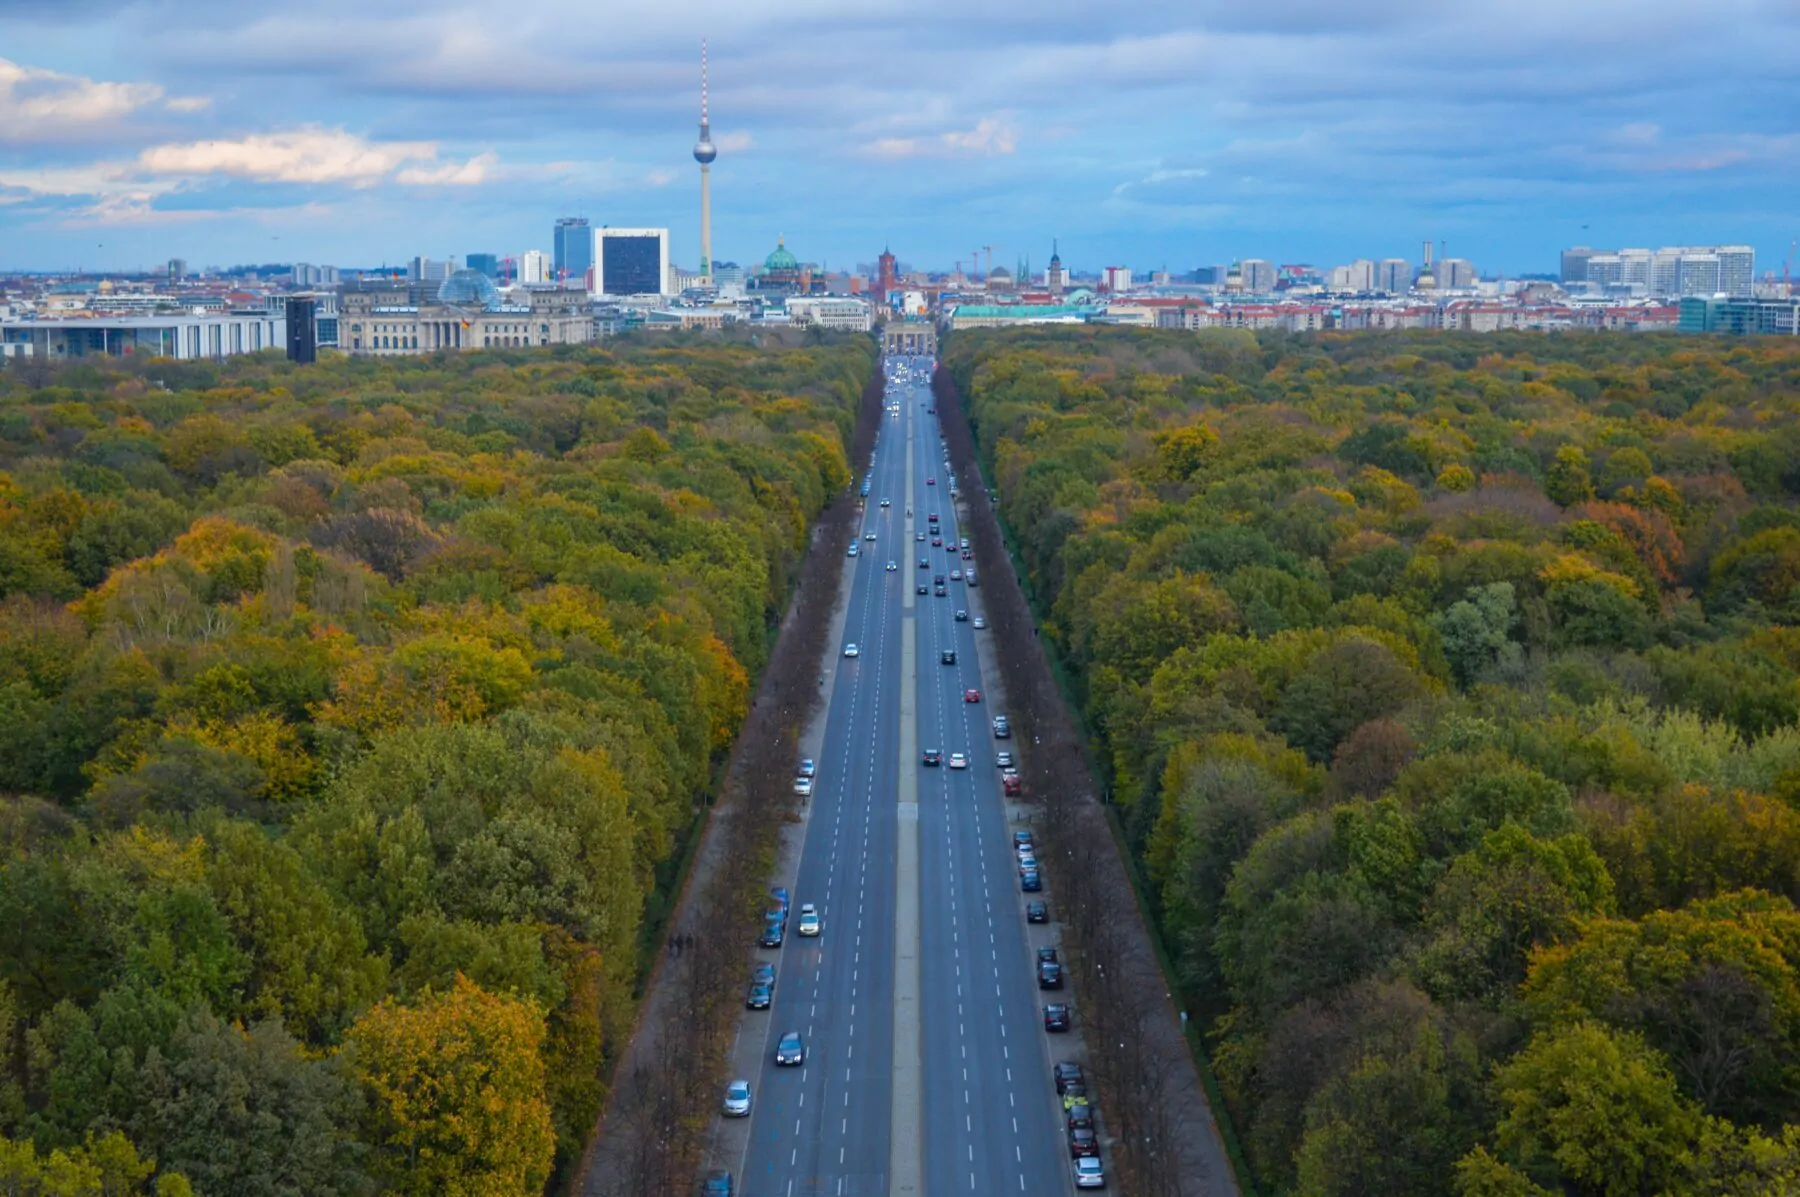 stadswandeling berlijn